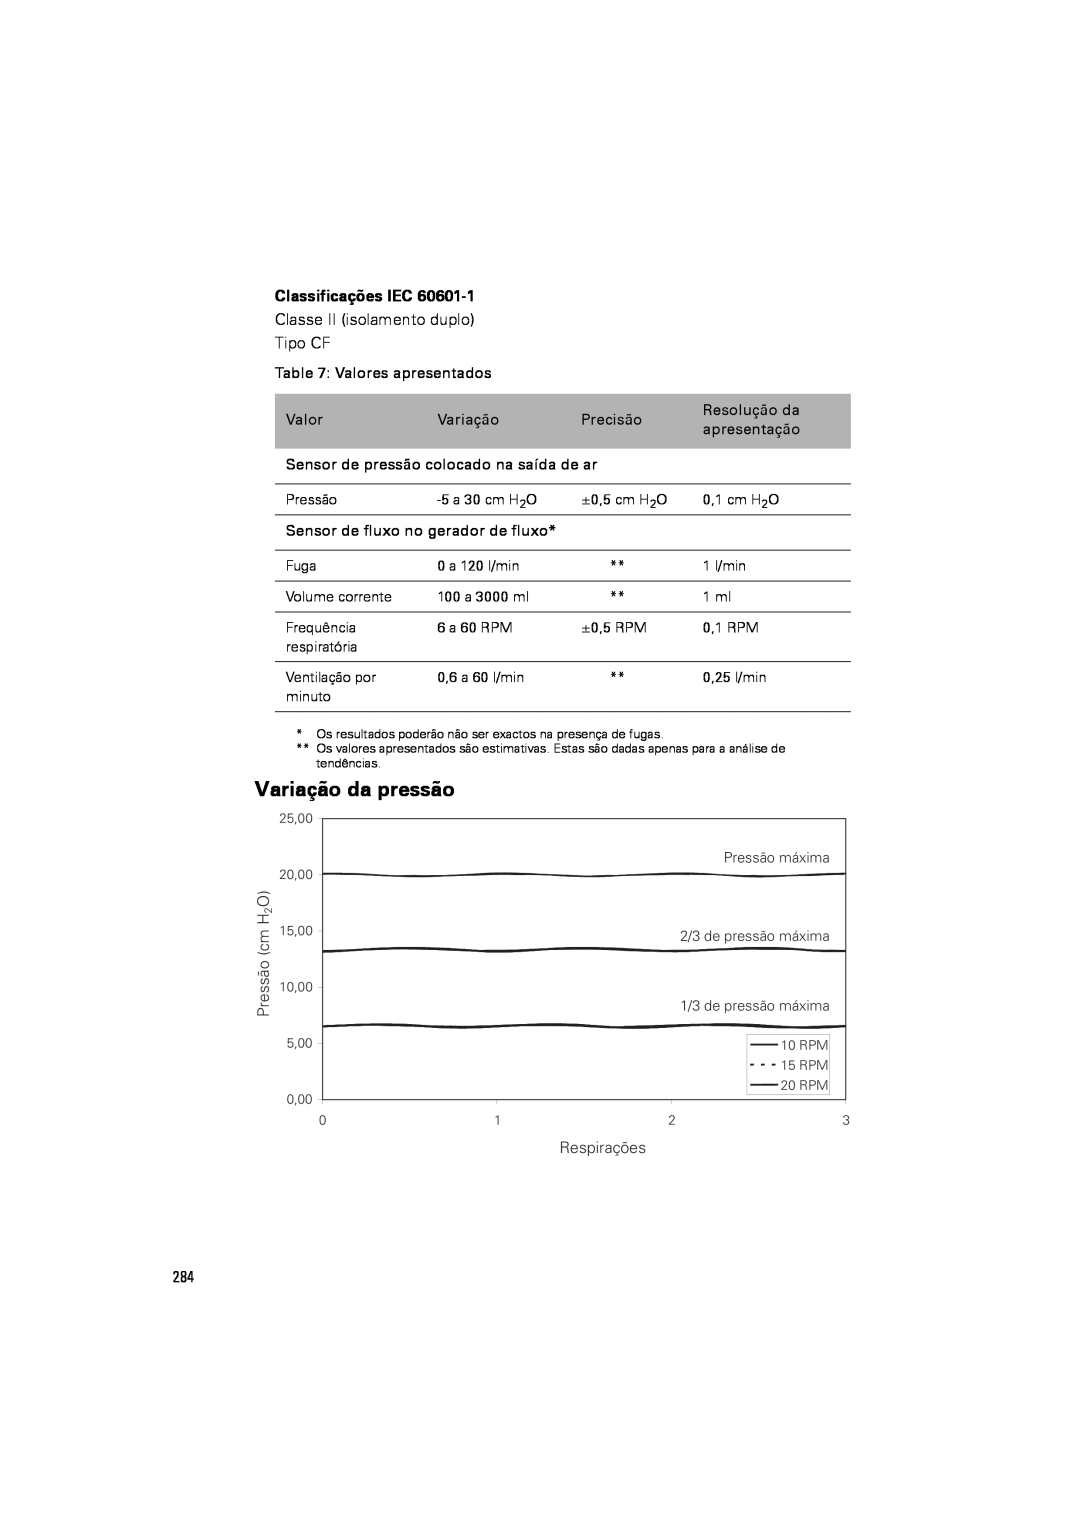 ResMed III & III ST user manual Variação da pressão, Classificações IEC 